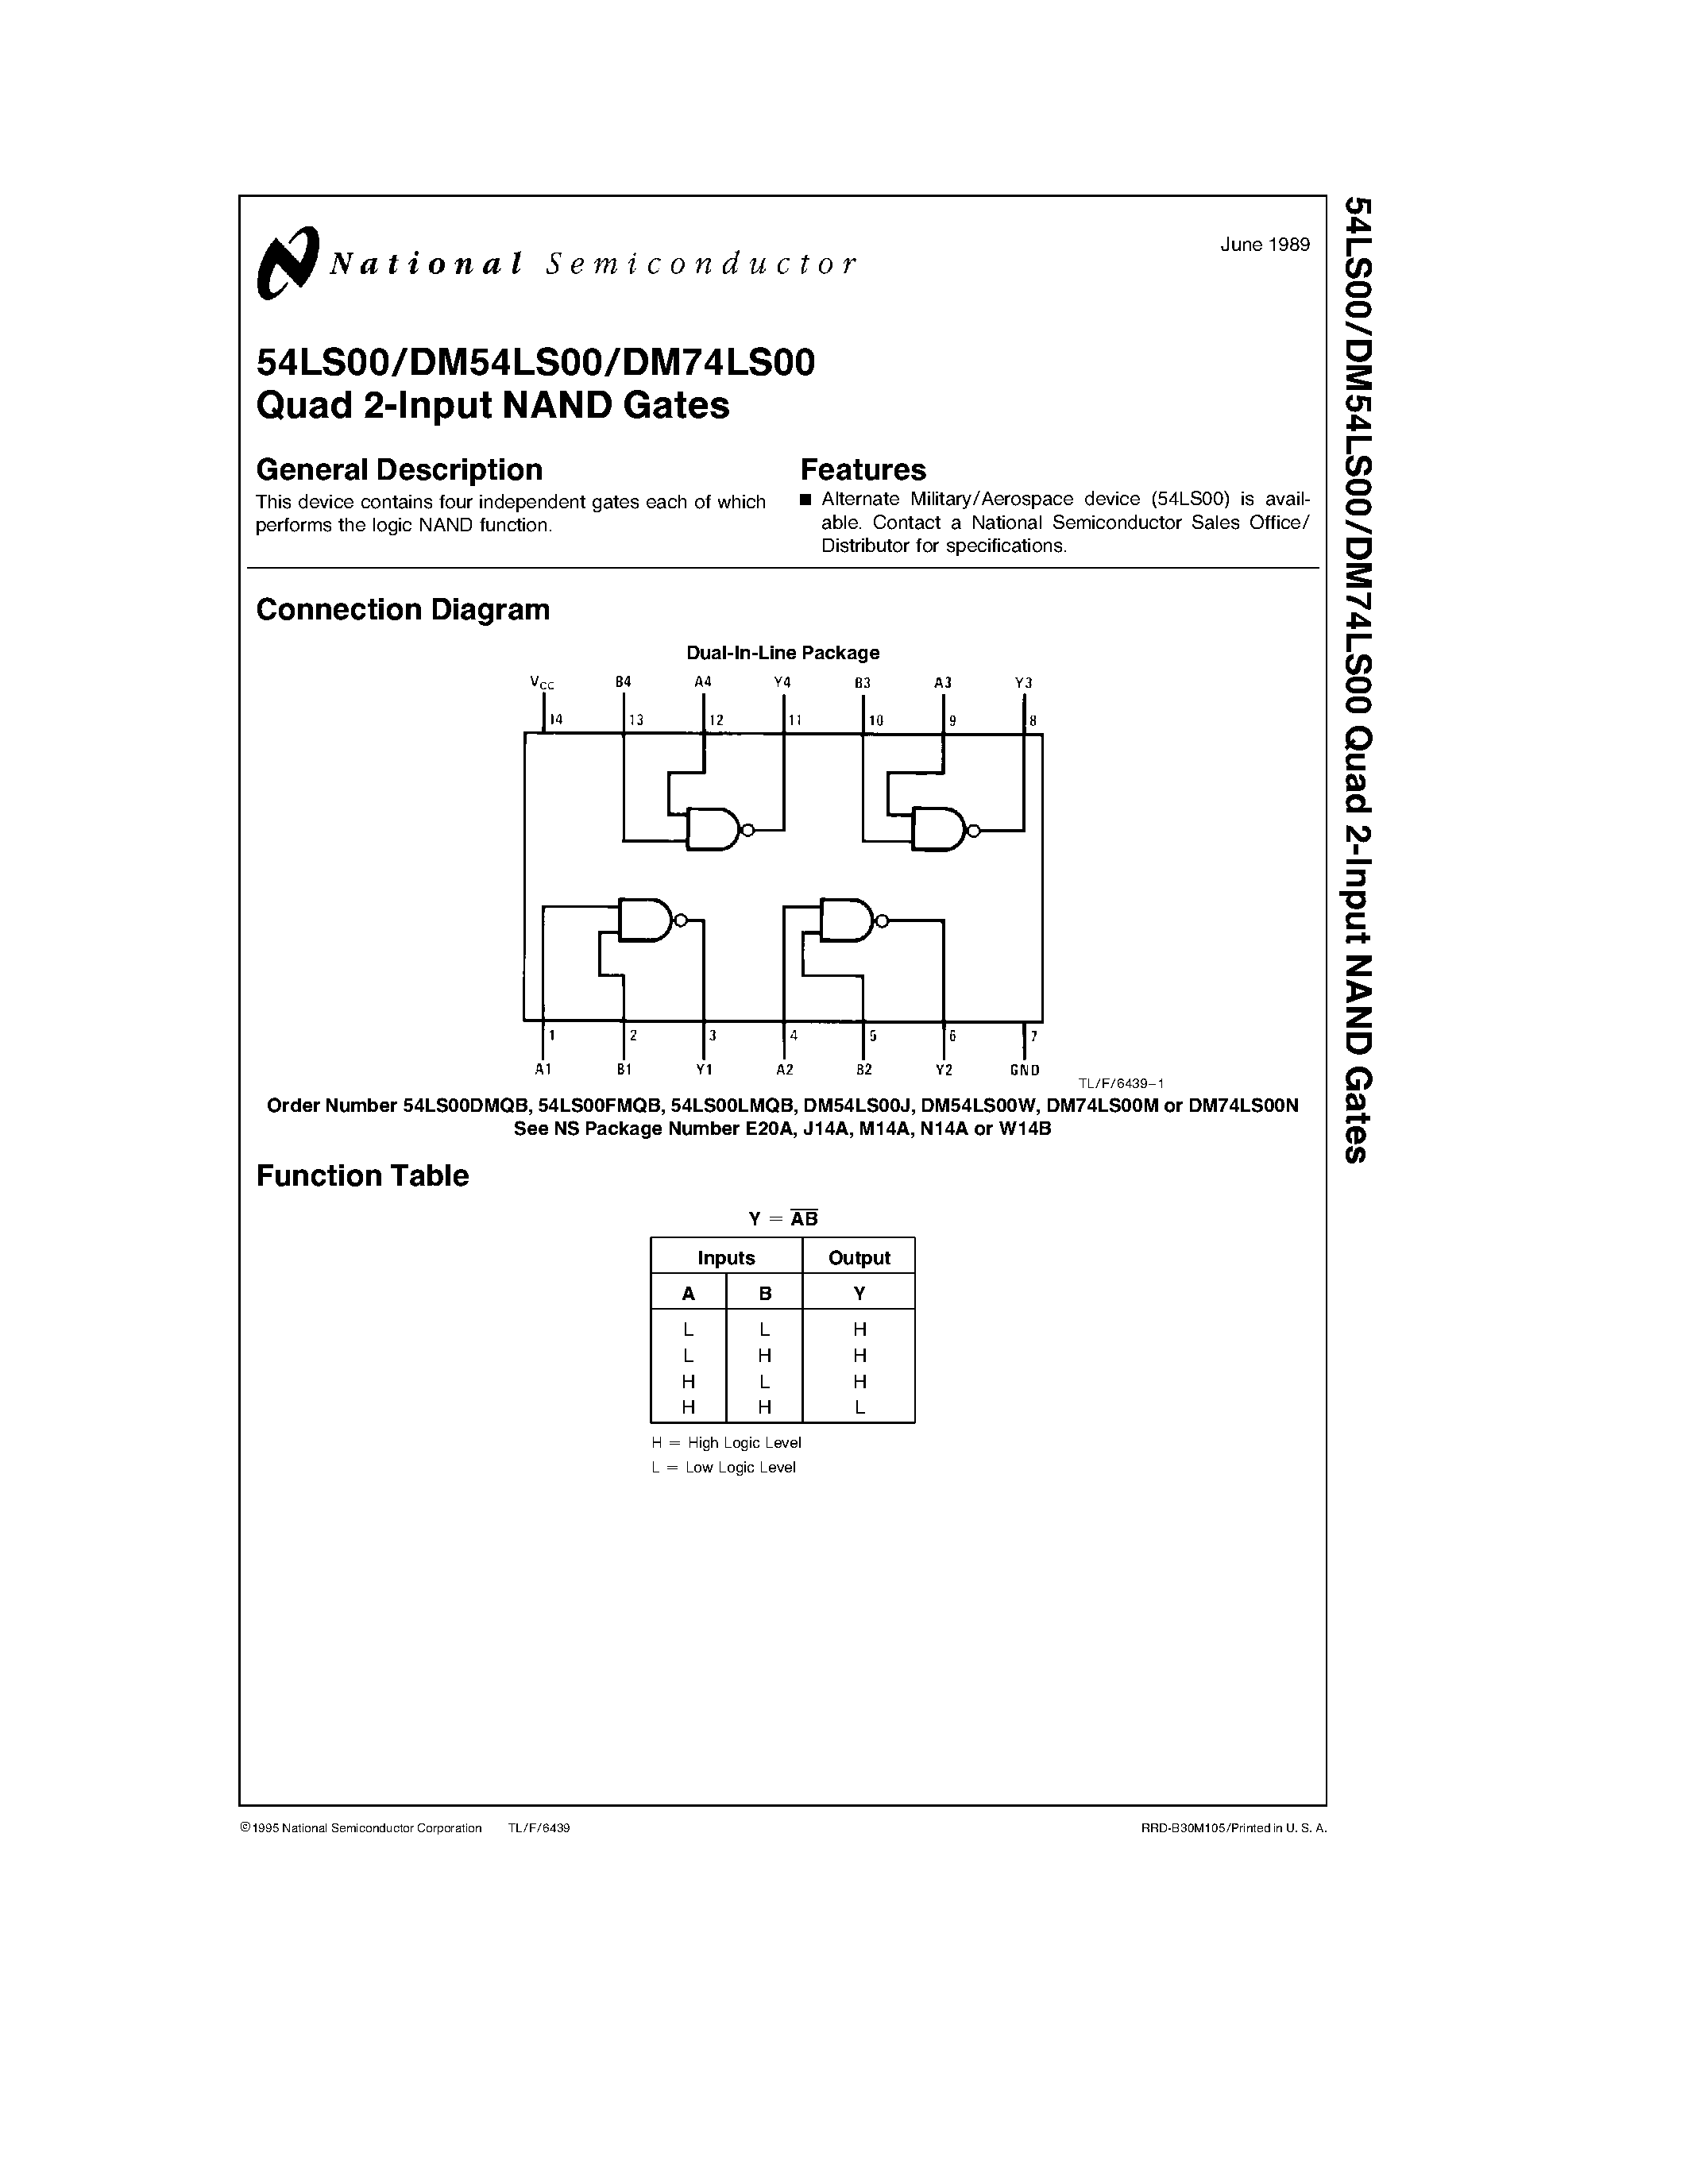 Даташит DM74LS00M - Quad 2-Input NAND Gates страница 1